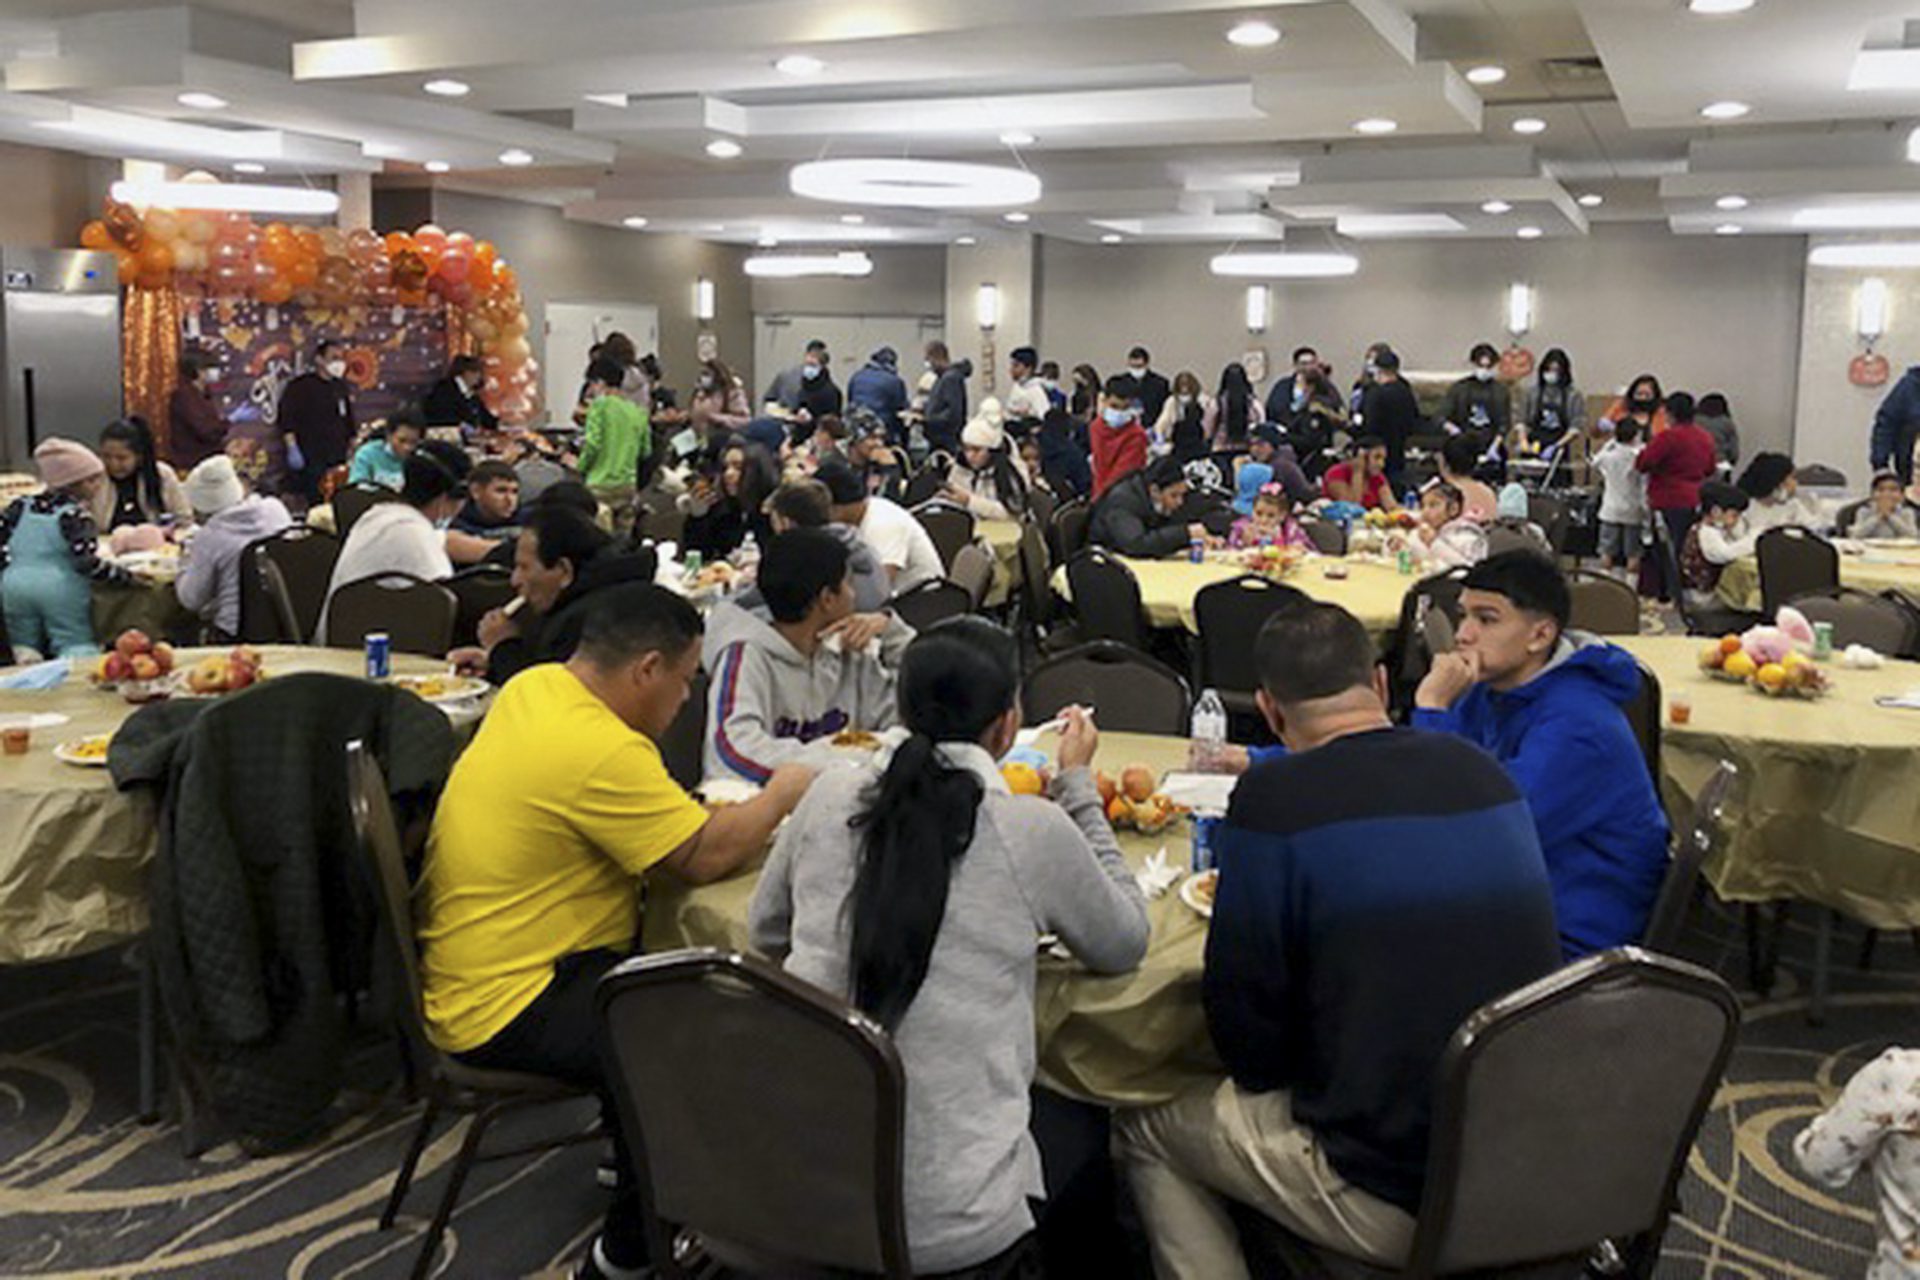 migrantes en mesas de un salon con decoracion de accion de gracias comiendo